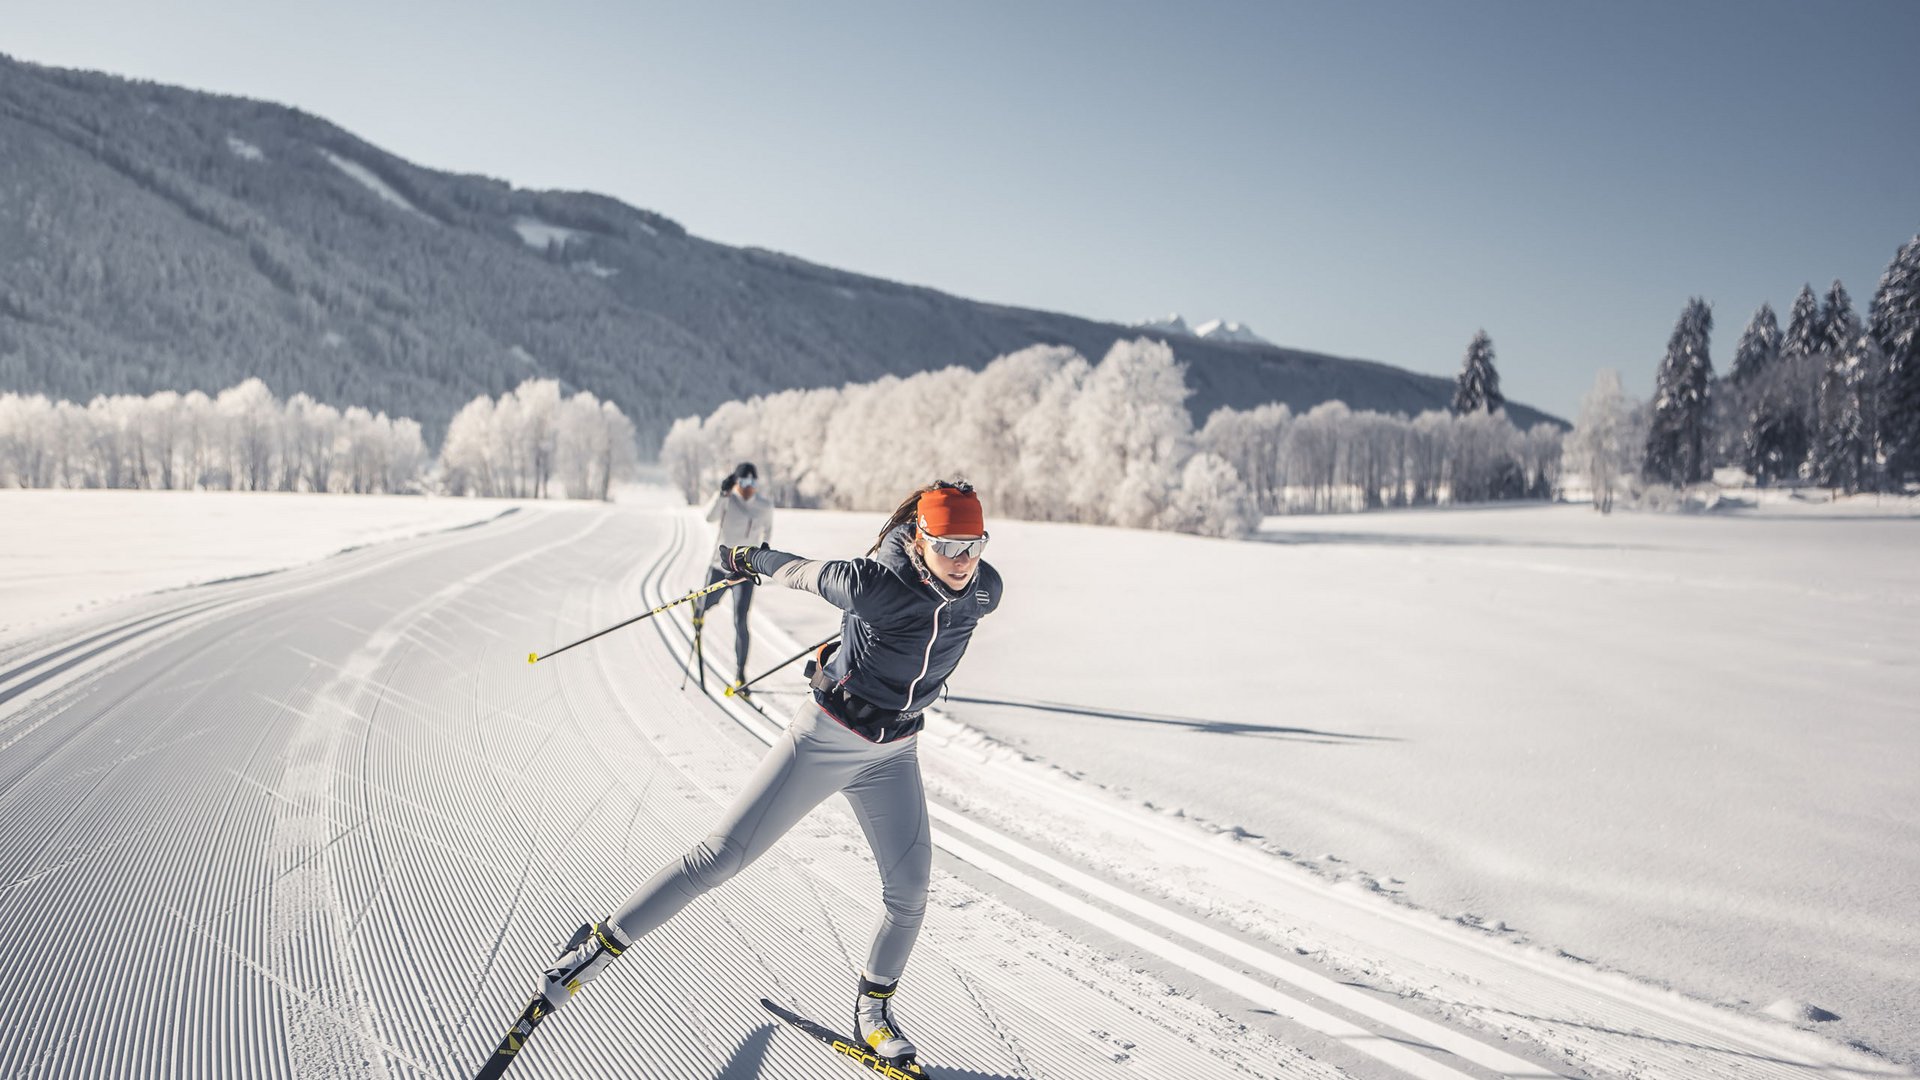 Winklerhotels: your sport, ski & bike hotel in South Tyrol